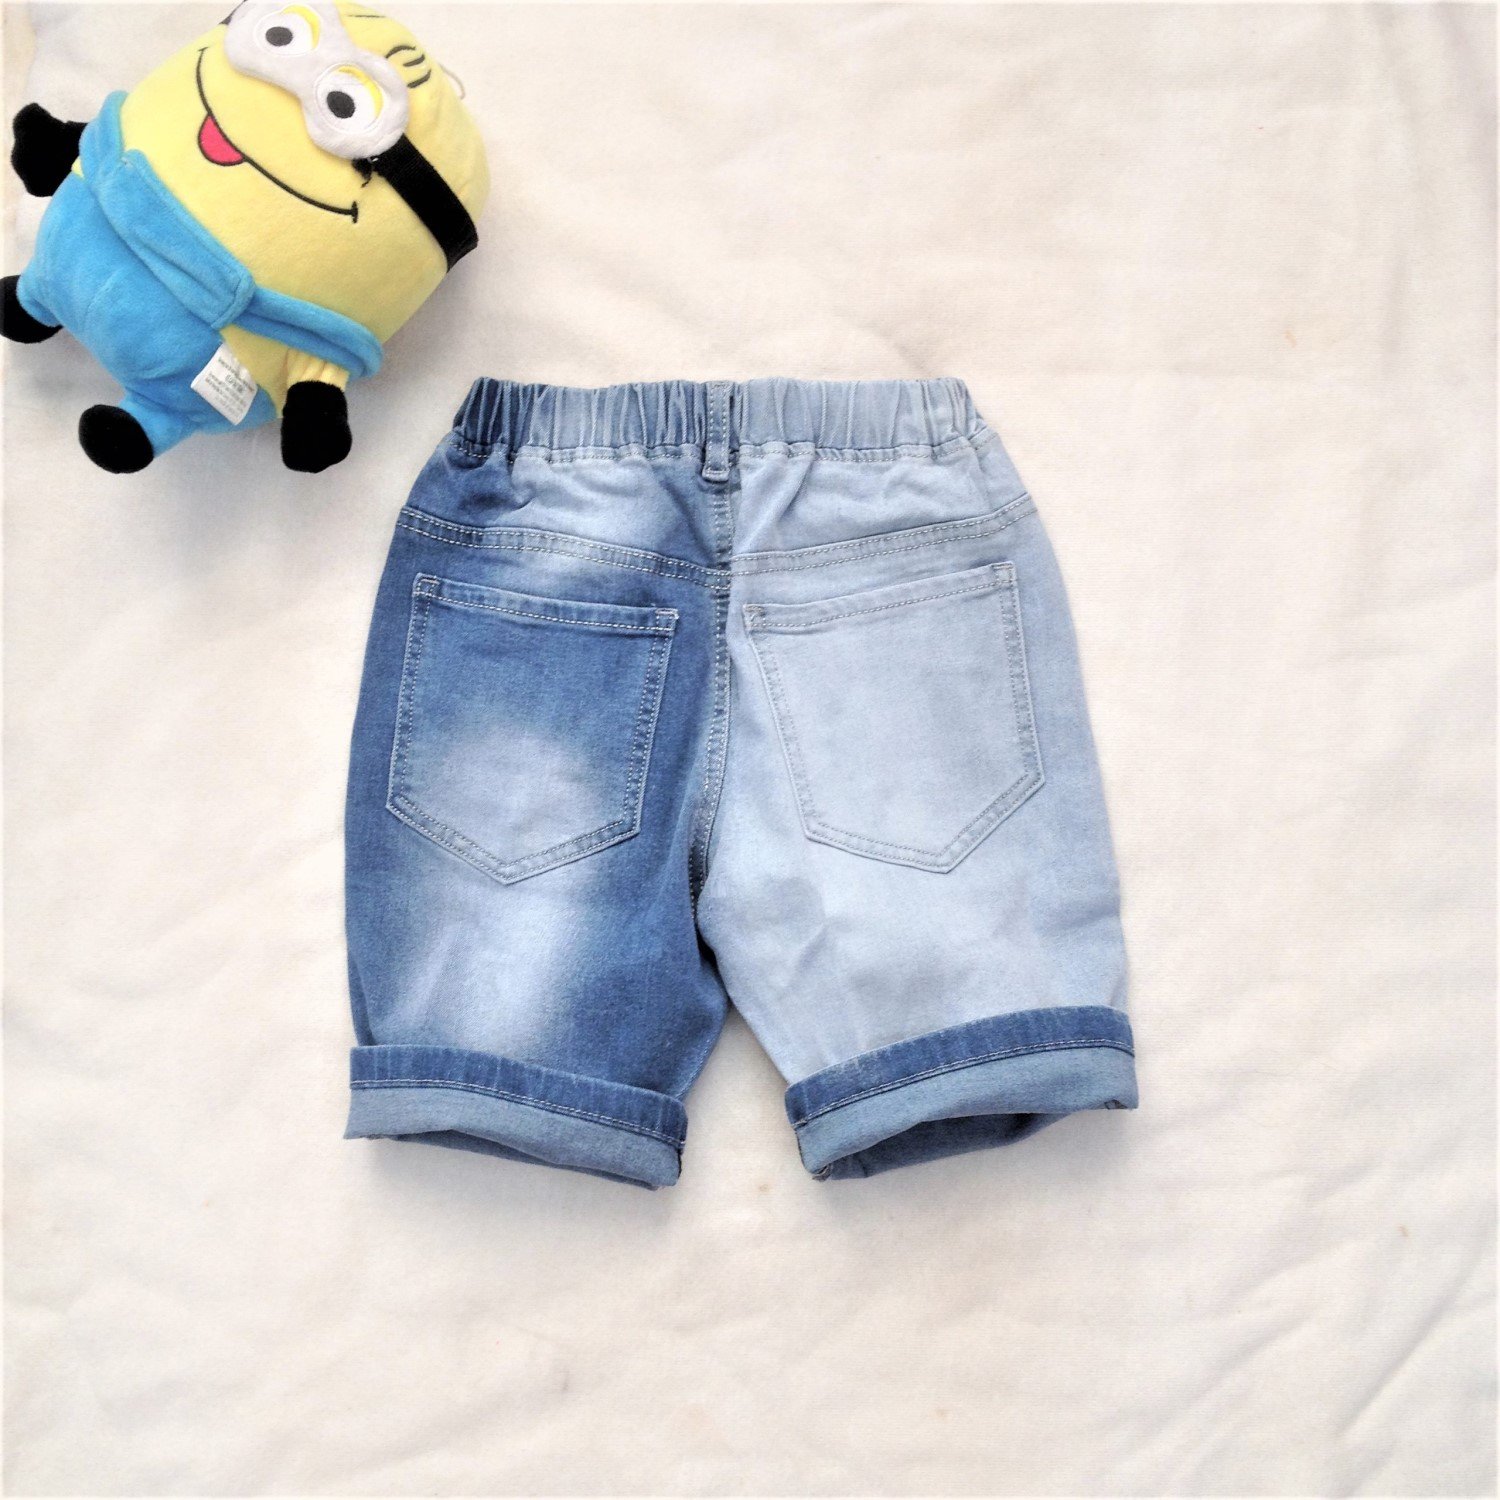 Q0001815 Quần jean lửng màu xanh wax, jean co giãn, dáng ôm body cho bé trai từ 4-8 tuổi (18-23kg)